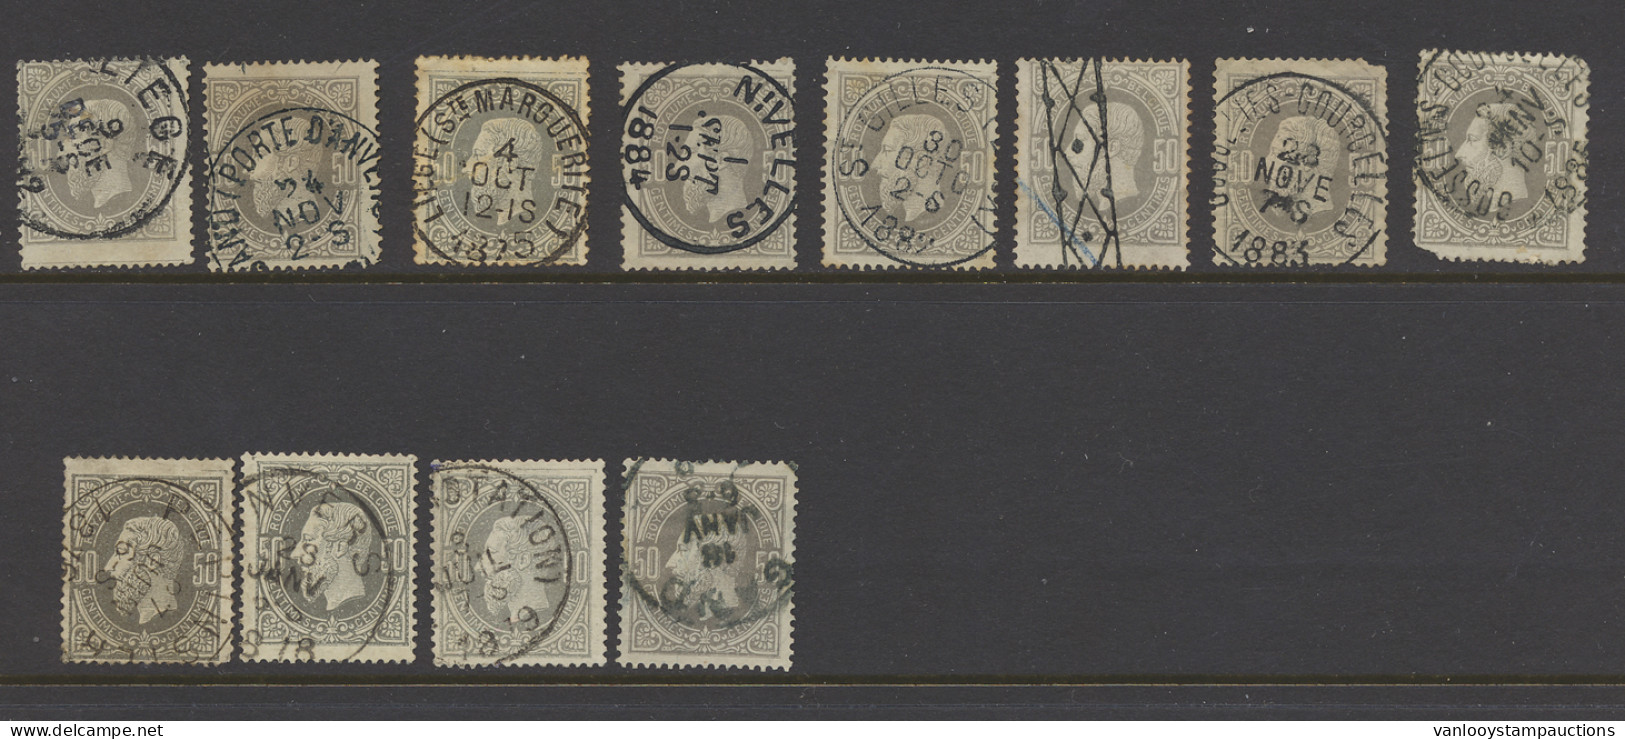 N° 35 50c. Grijs, 12 Exemplaren W.o. Pepinster, Roulette, Enkele Zegels Beschadigd, Zm/m/ntz (OBP €150) - 1869-1883 Leopoldo II